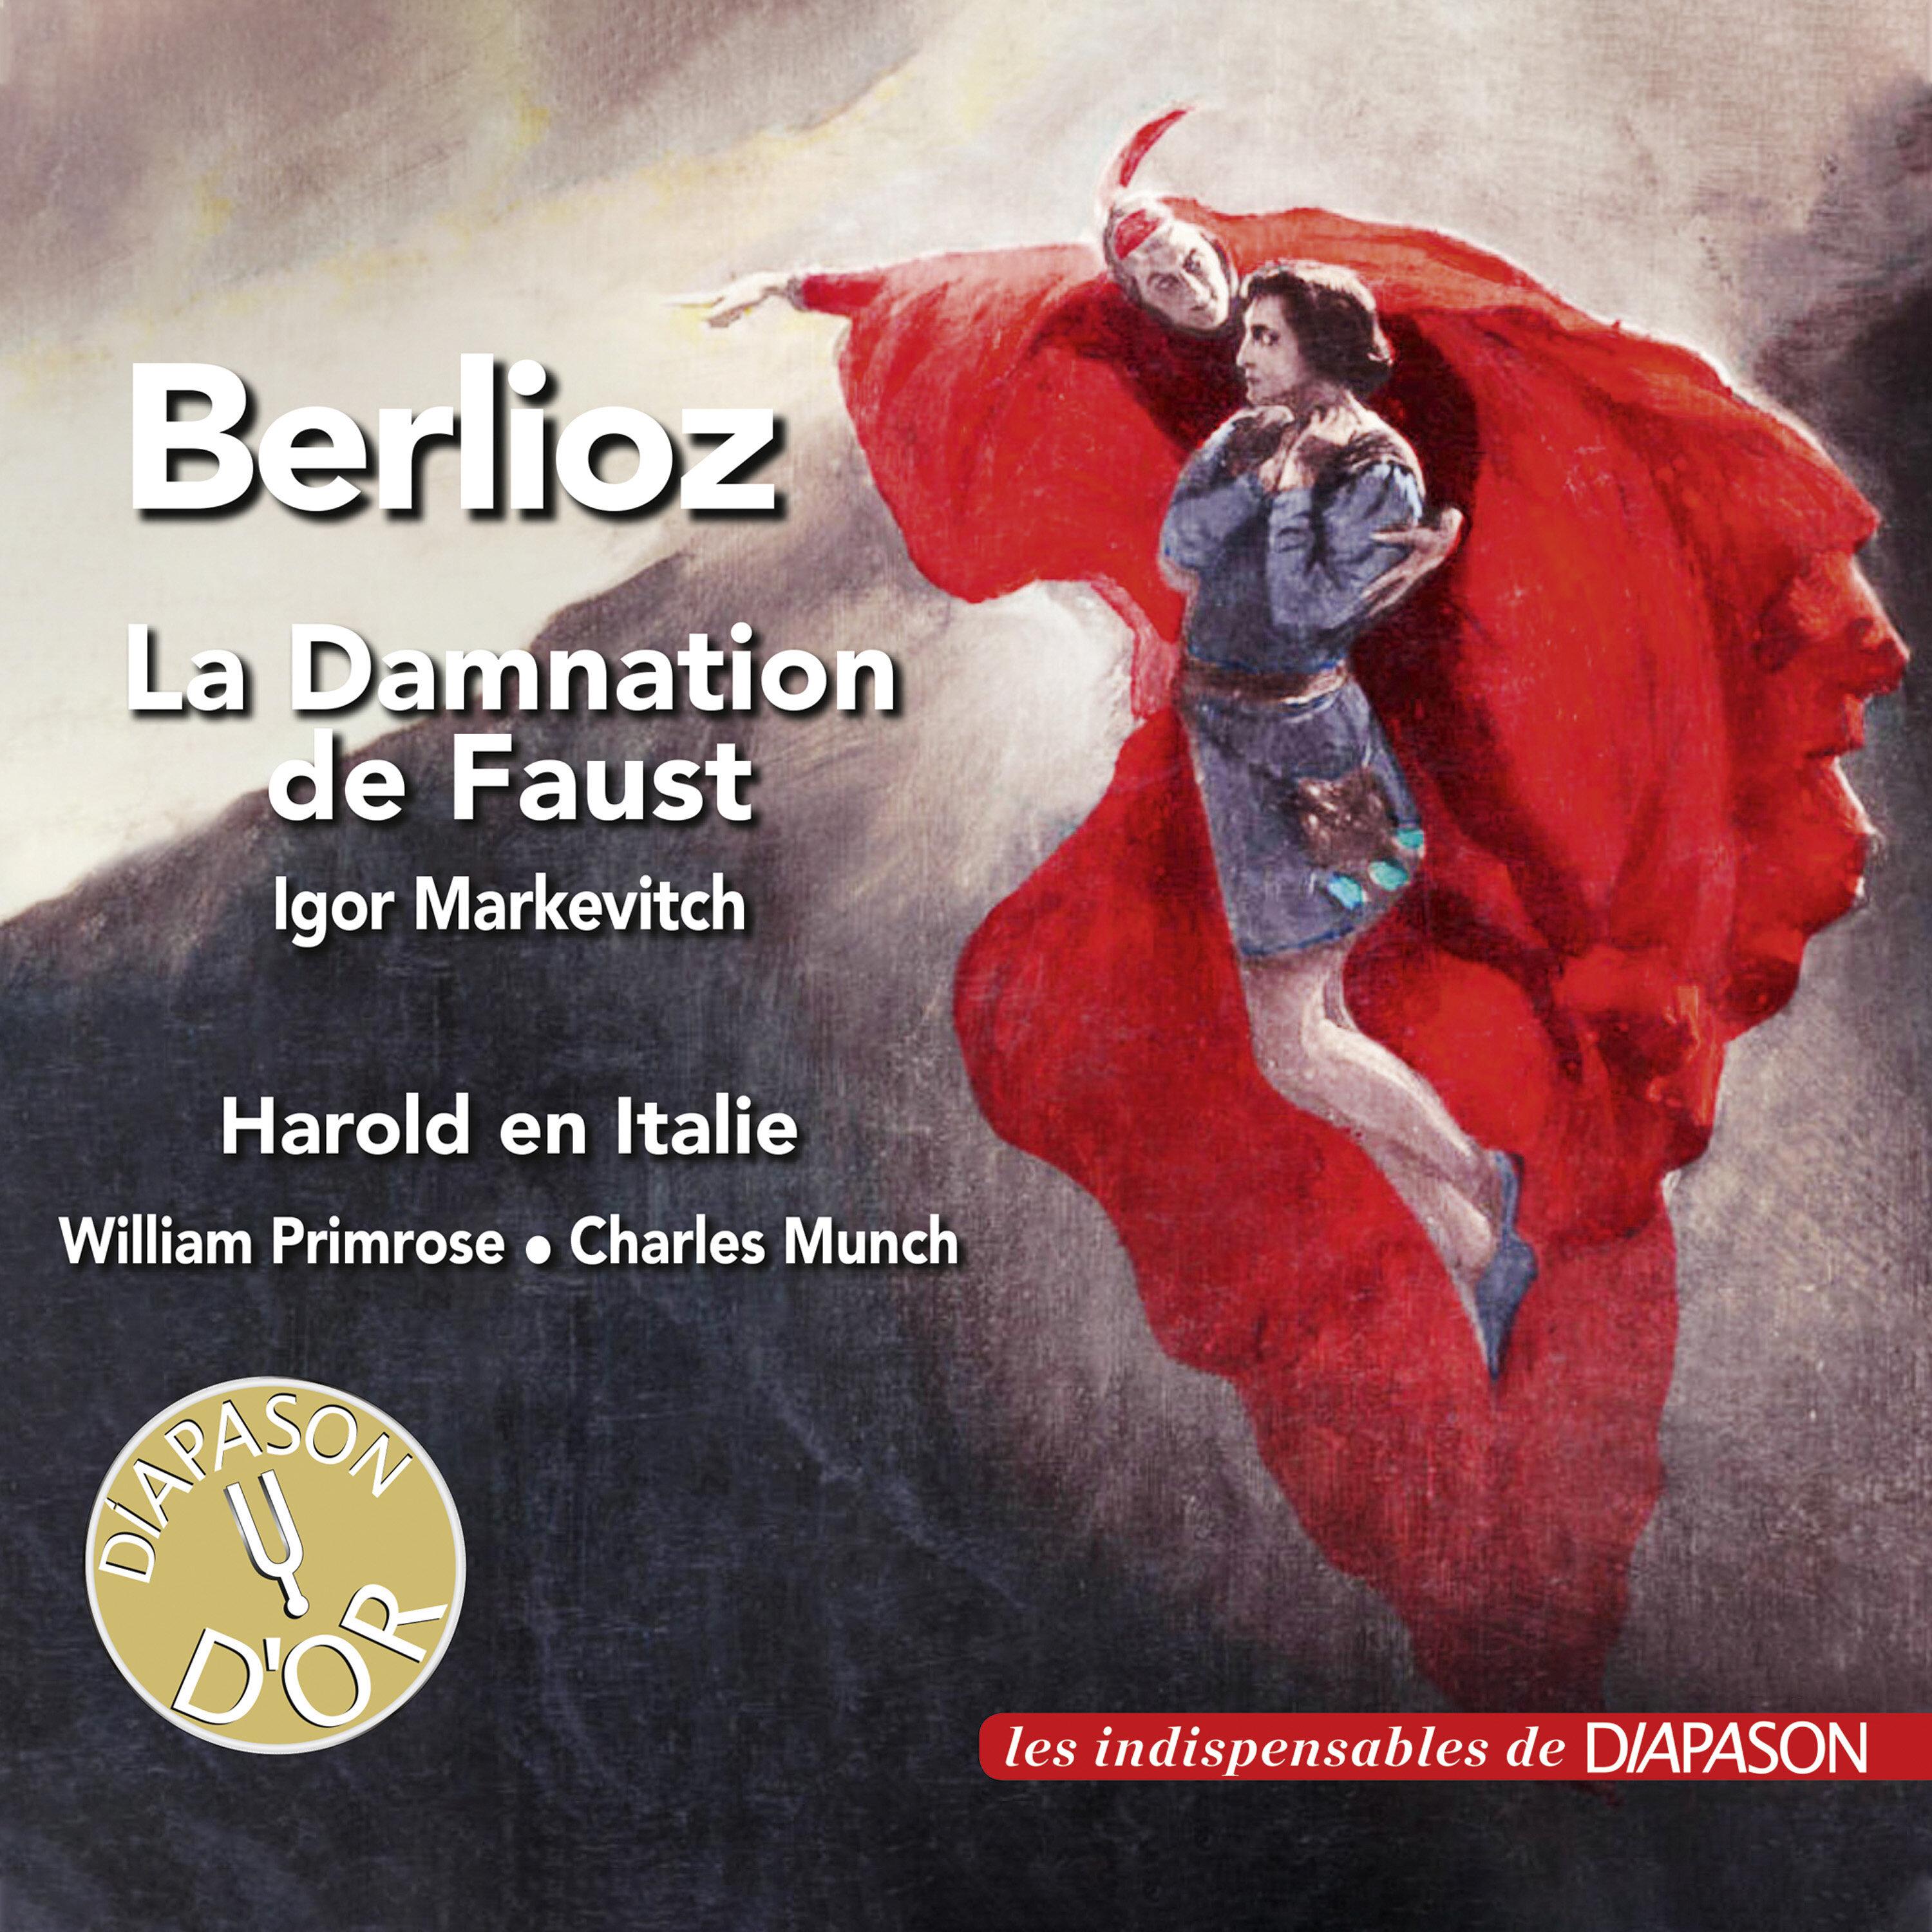 Orchestre des concerts Lamoureux - La damnation de Faust, Op. 24, H. 111, Pt. 4 Scene 20: 